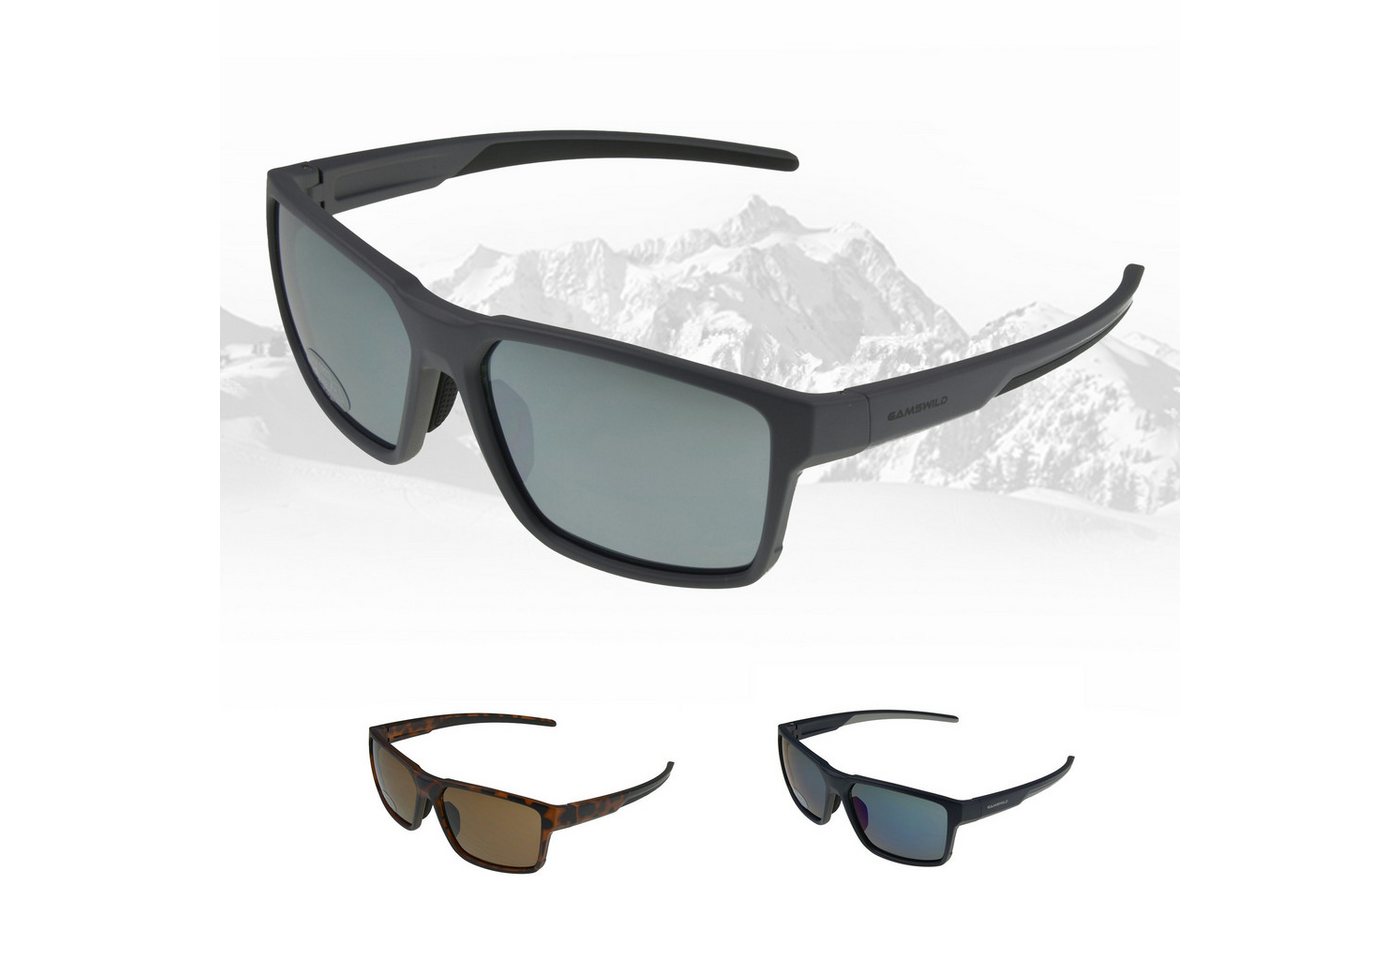 Gamswild Sonnenbrille UV400 Sportbrille Skibrille Fahrradbrille getönte Gläser Damen Herren Unisex Modell WS5936 in schwarz, grau, braun von Gamswild